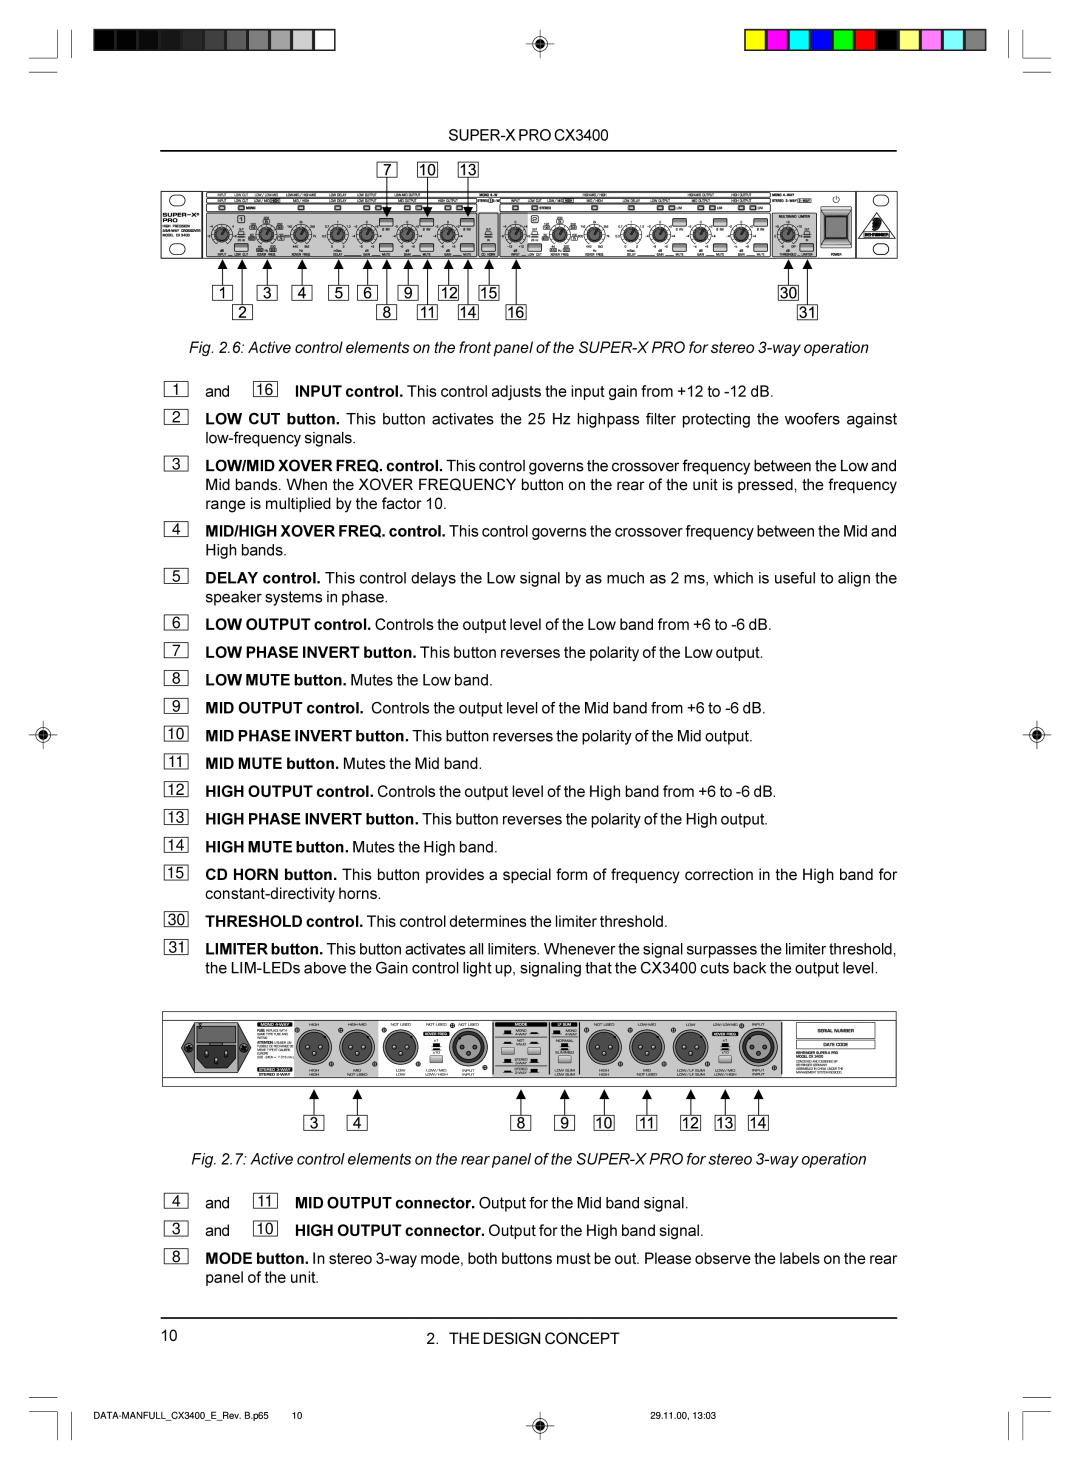 Behringer manual 4 5 6 7 8 9, DATA-MANFULL CX3400 E Rev.B.p65, 29.11.00 